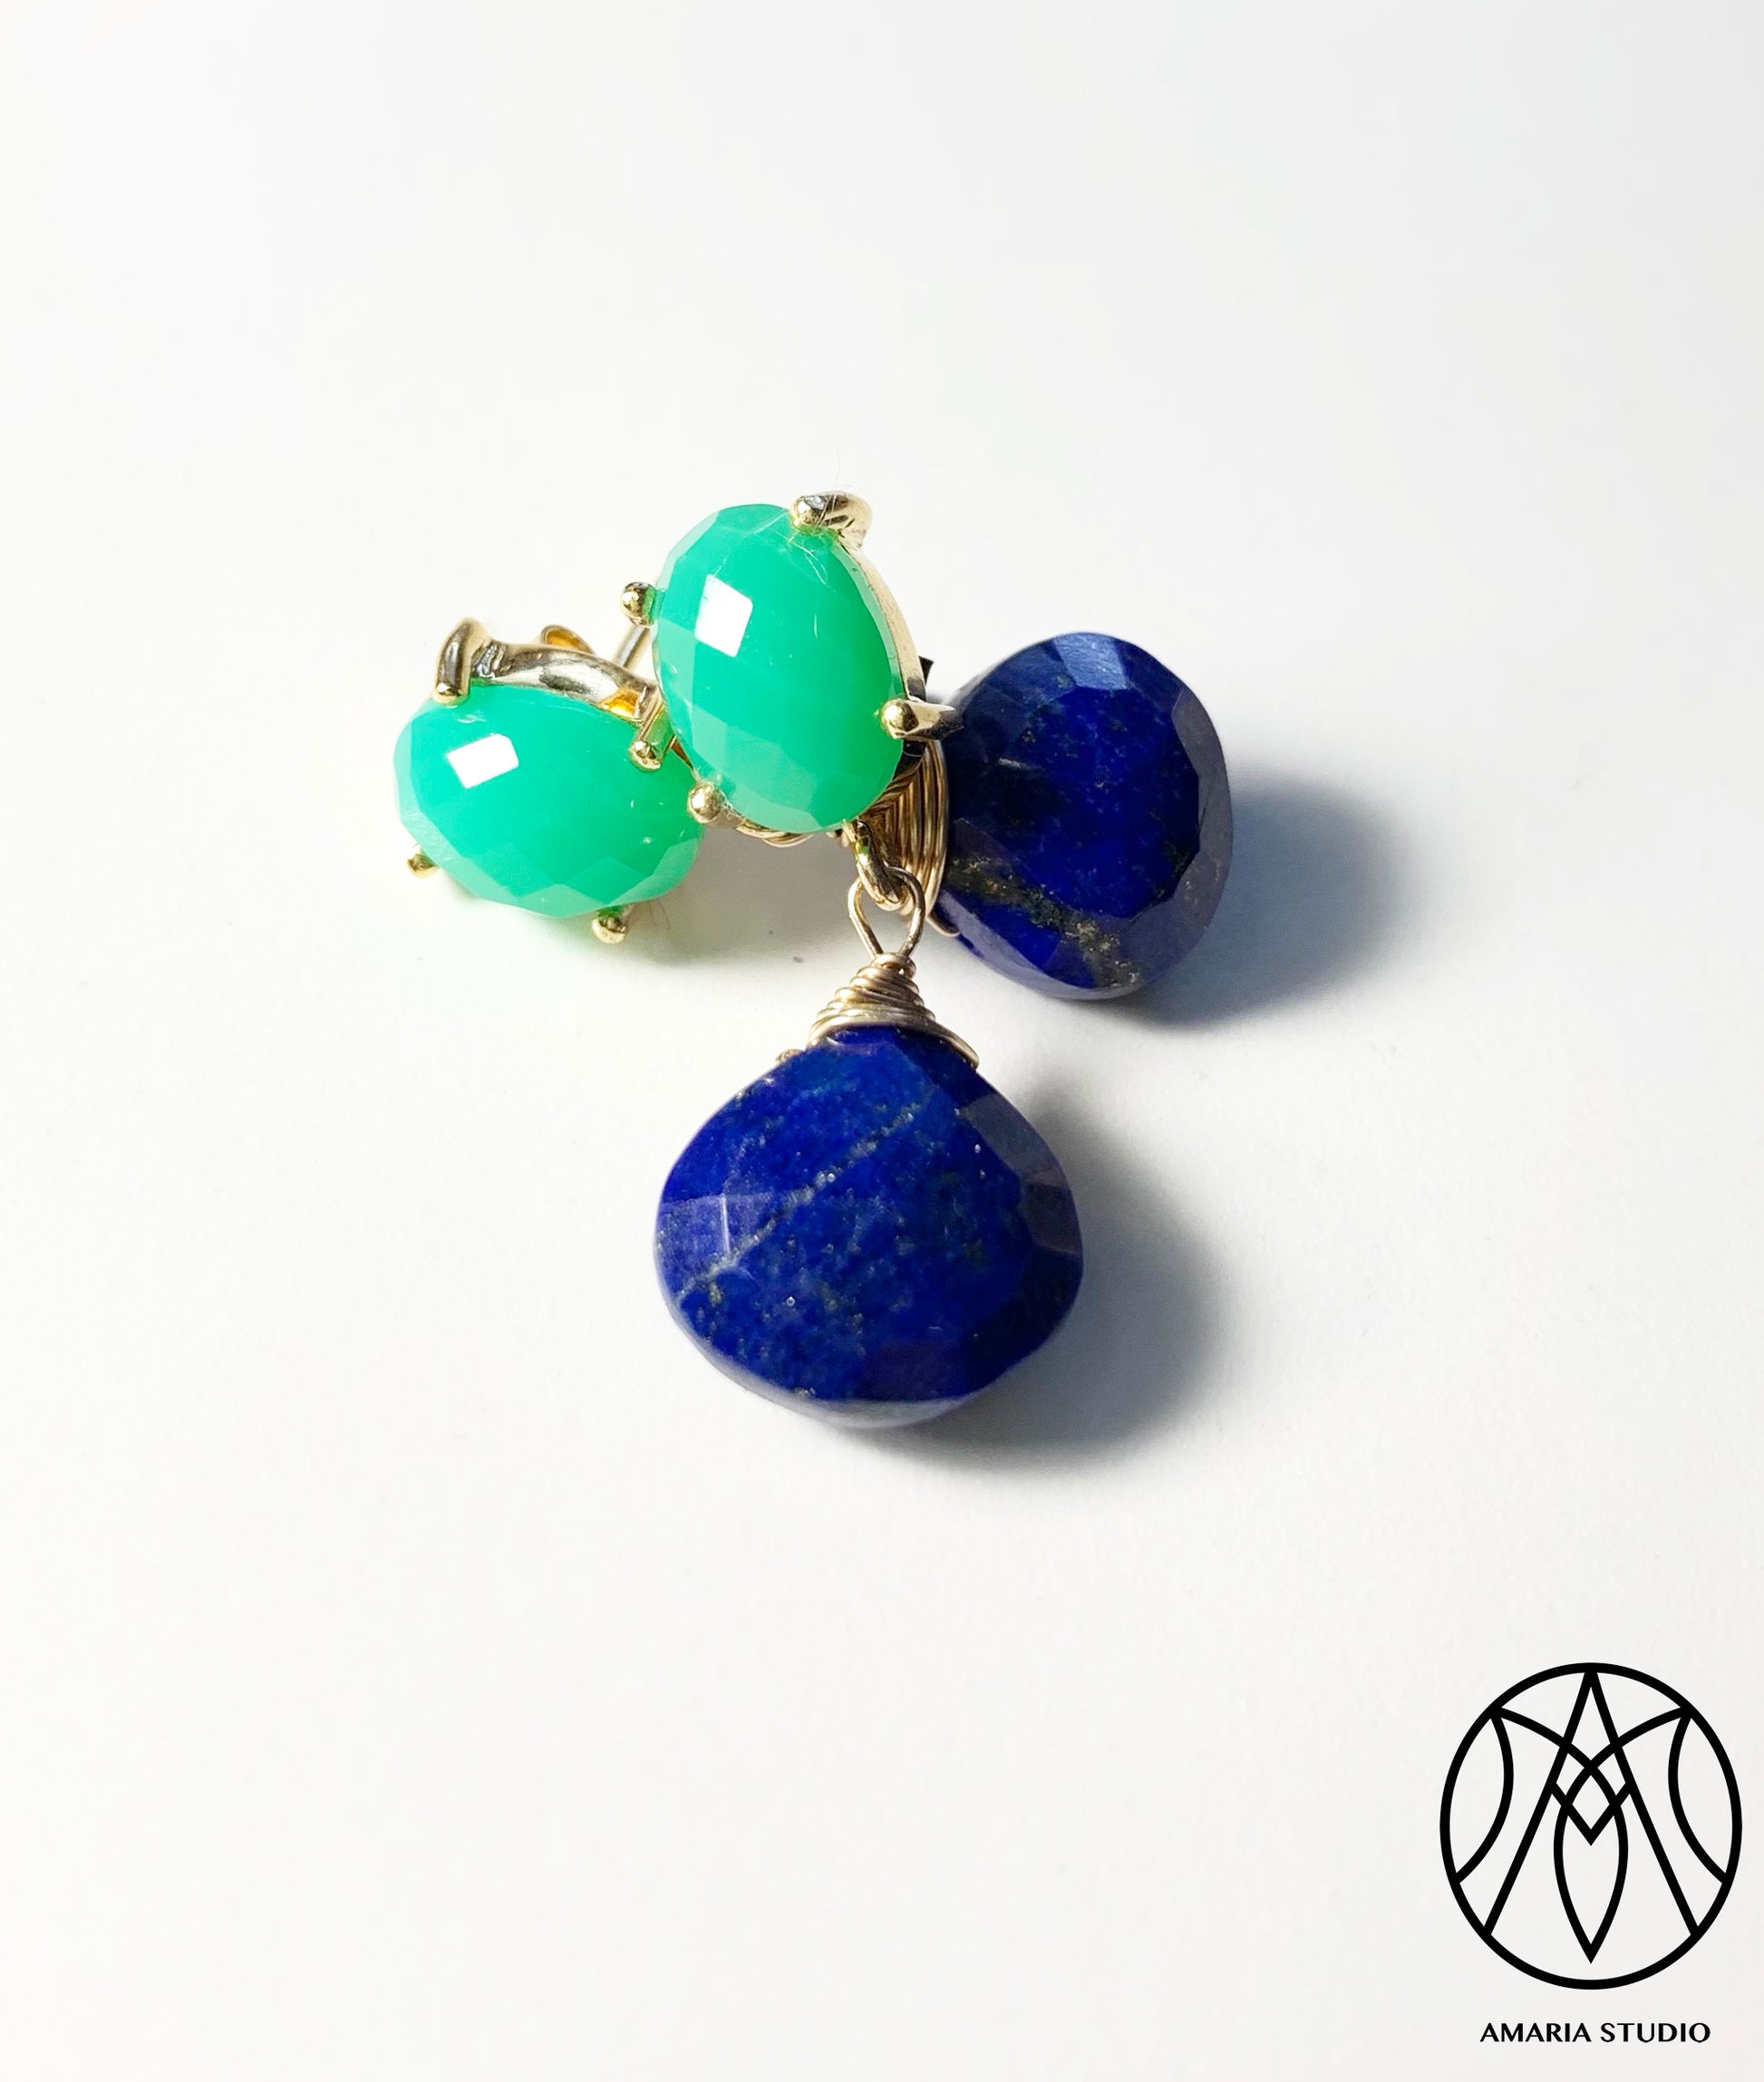 Chrysoprase and lapis lazuli earrings - Amaria Studio